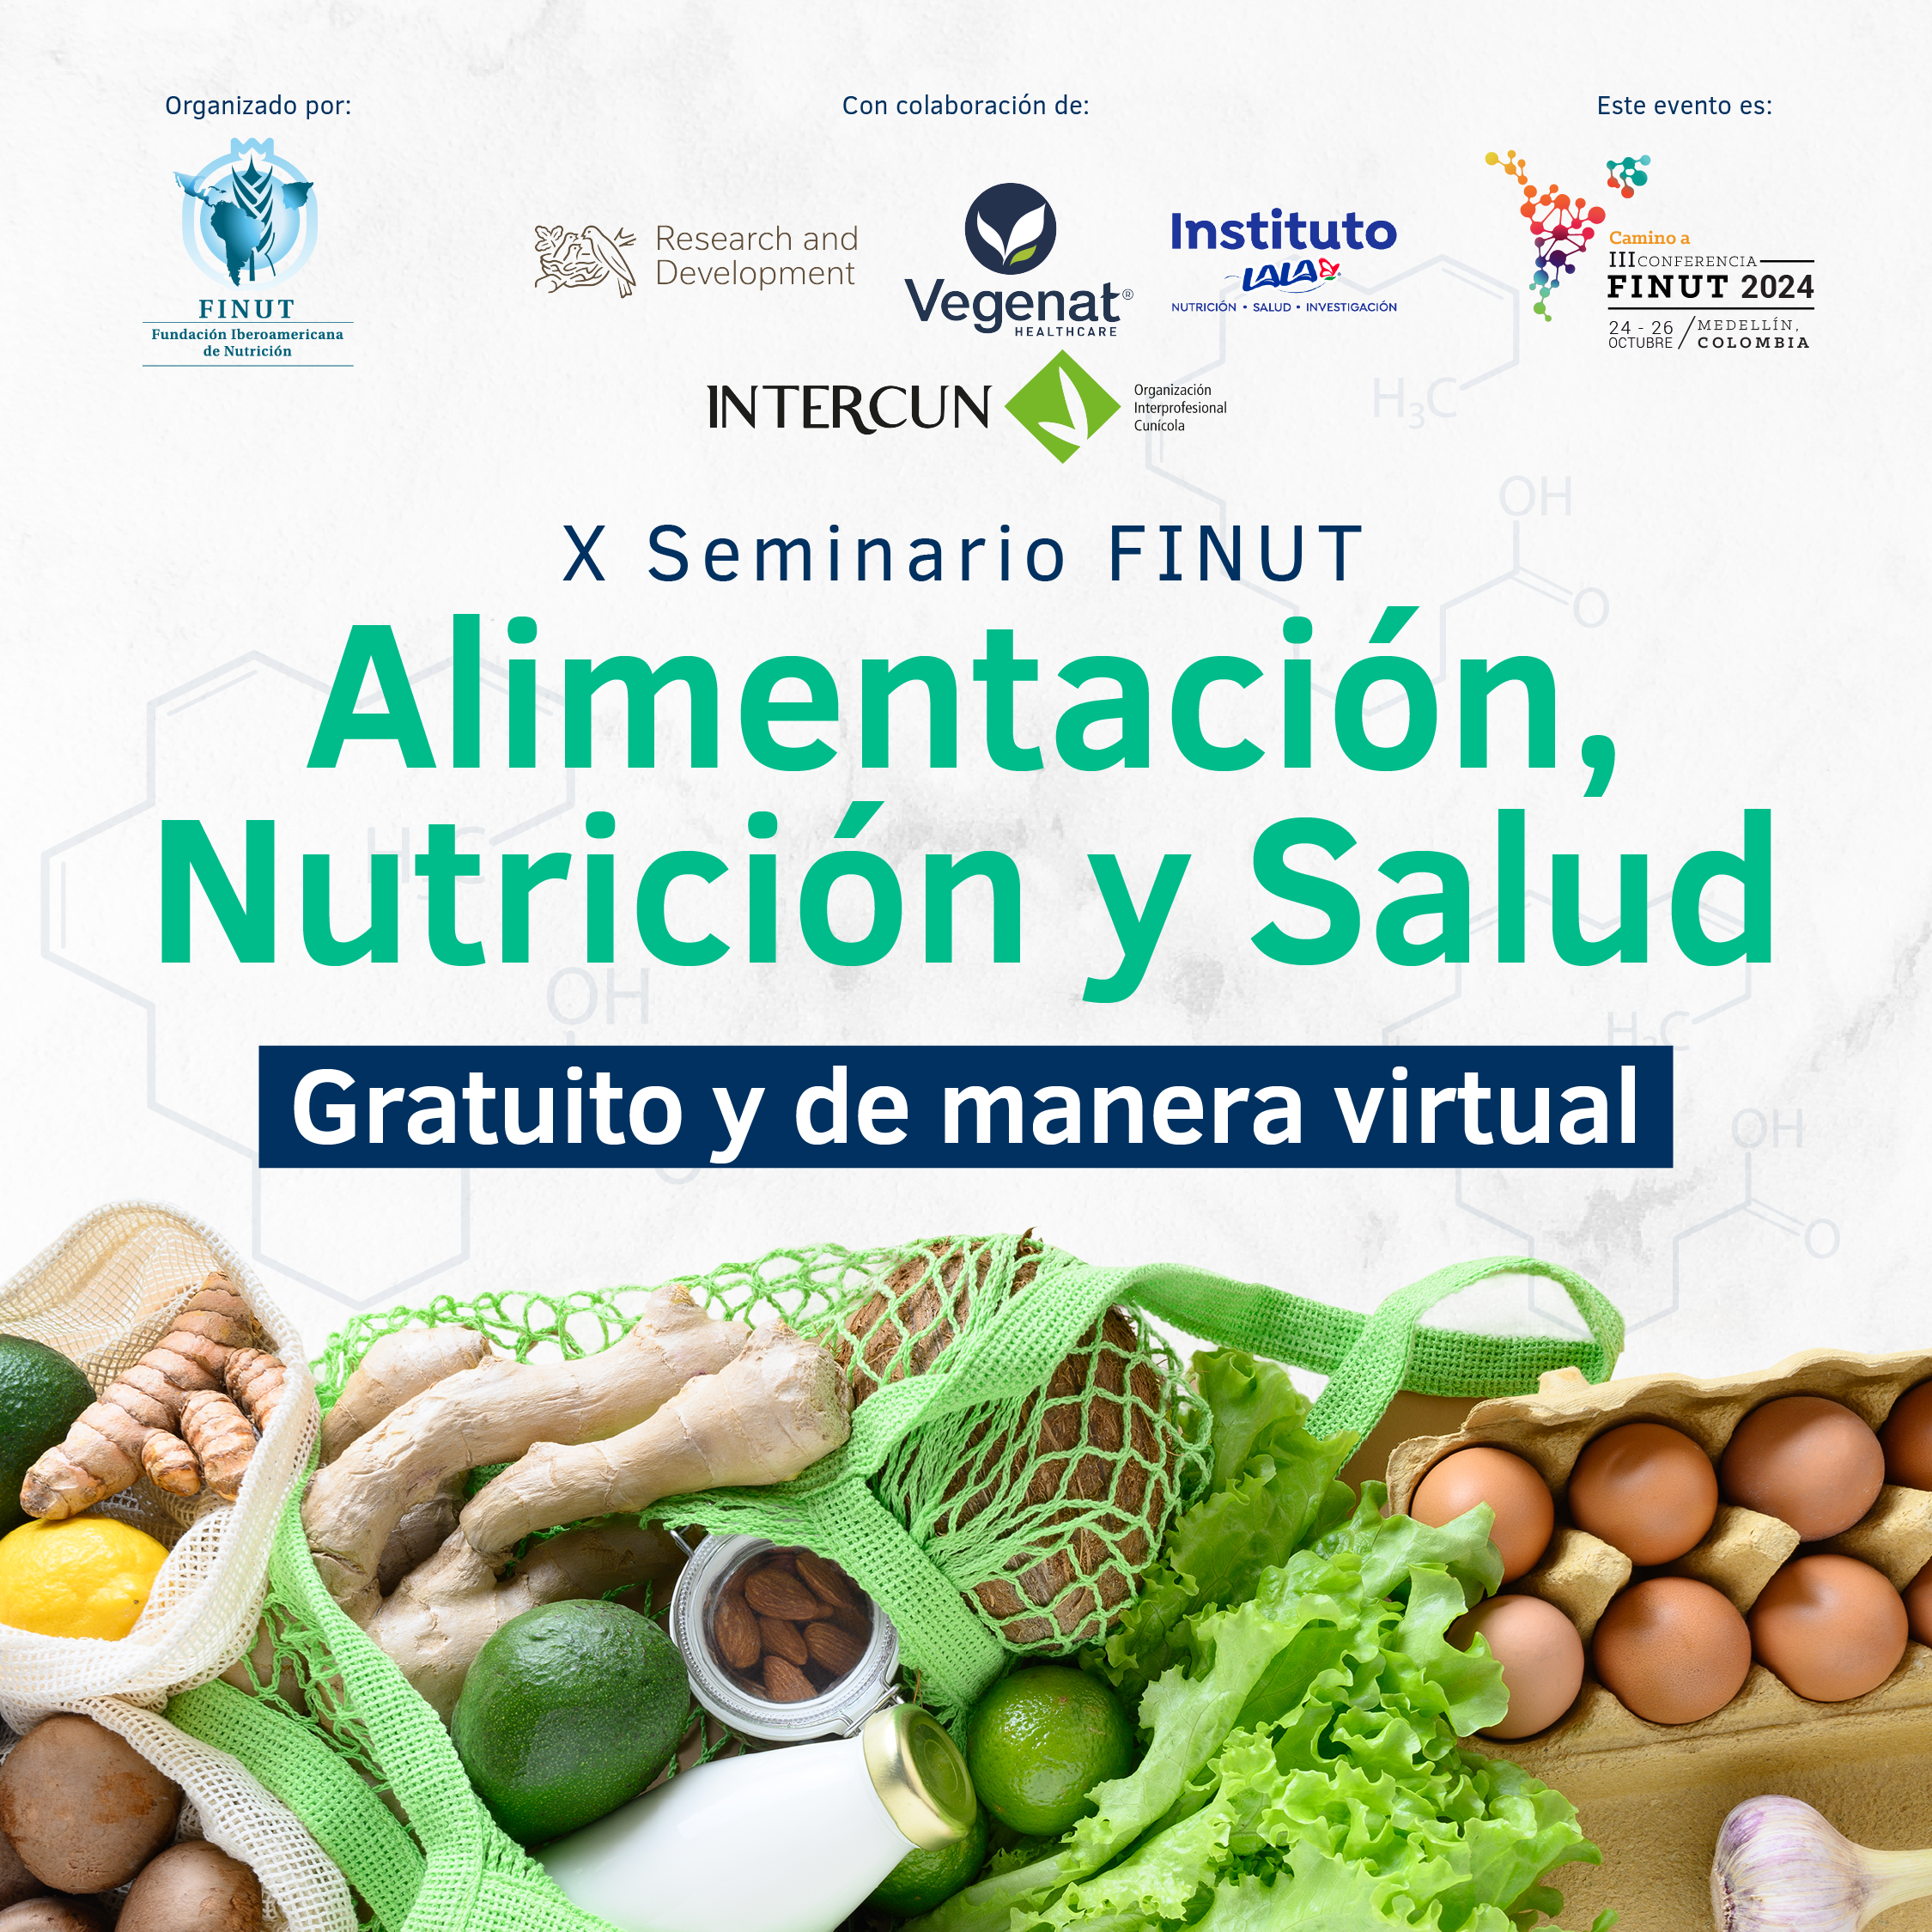 X SEMINARIO FINUT ALIMENTACION NUTRICION Y SALUD